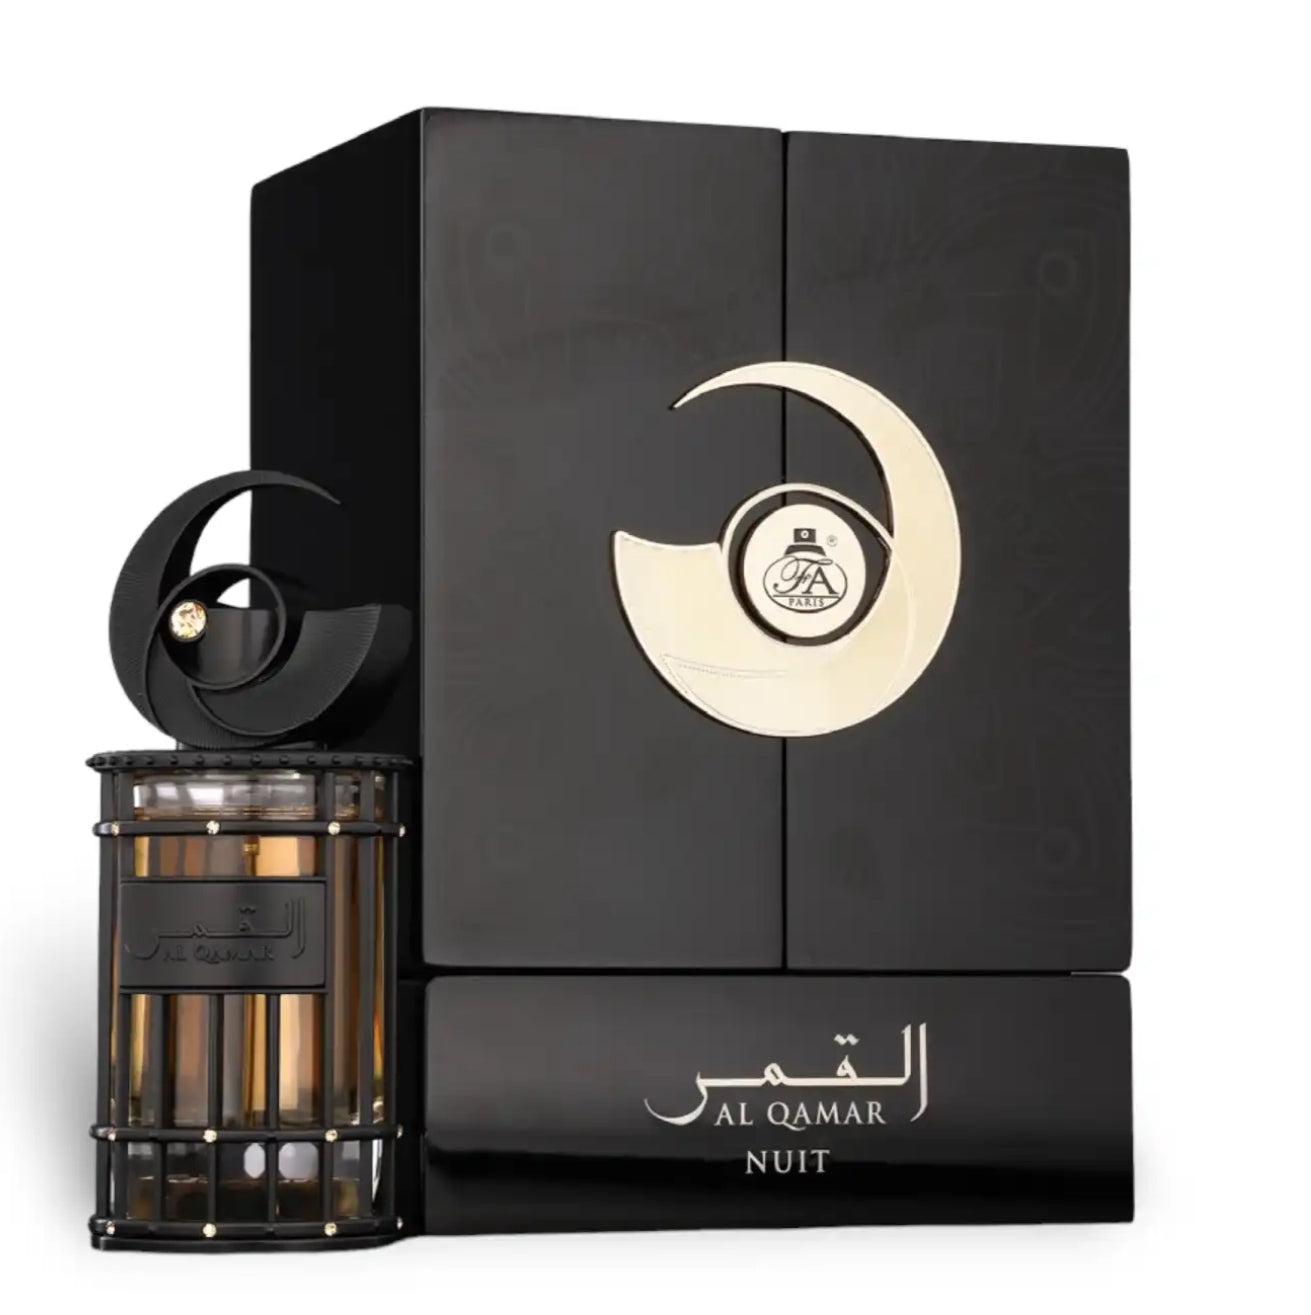 Al Qamar Nuit - Fragrance World